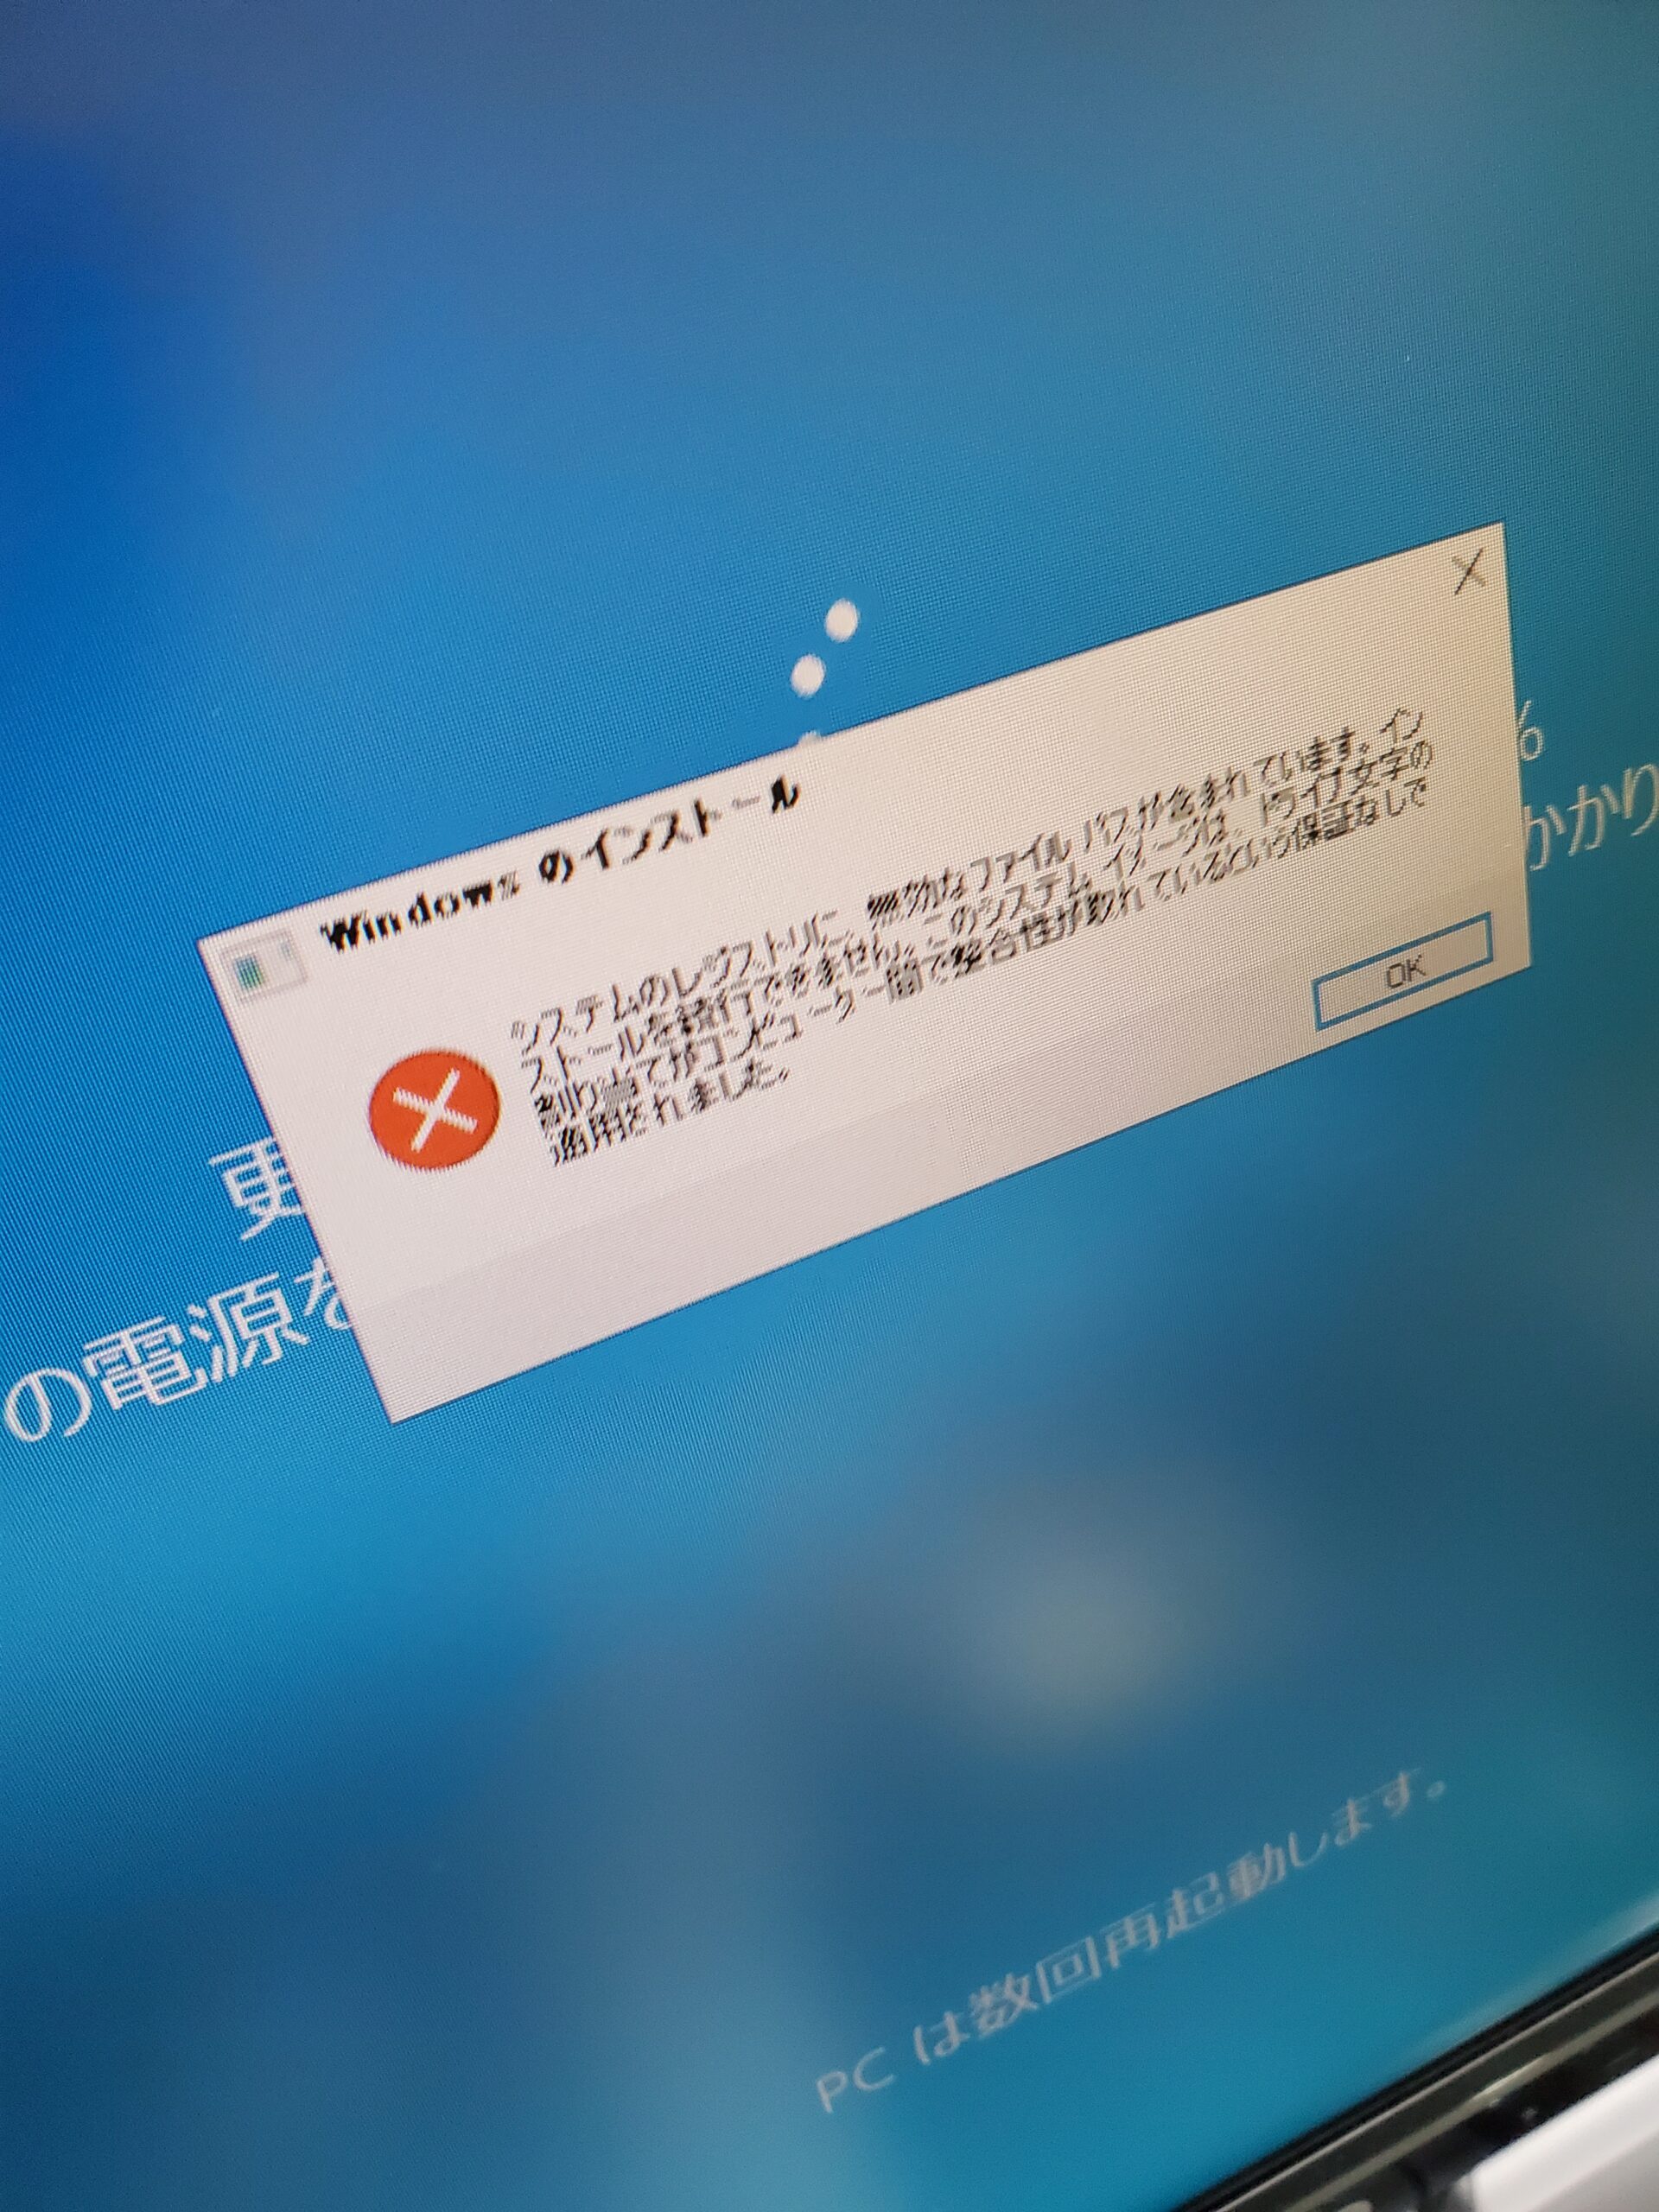 【パソコン修理】Windows7からWindows10へのアップグレードに失敗する